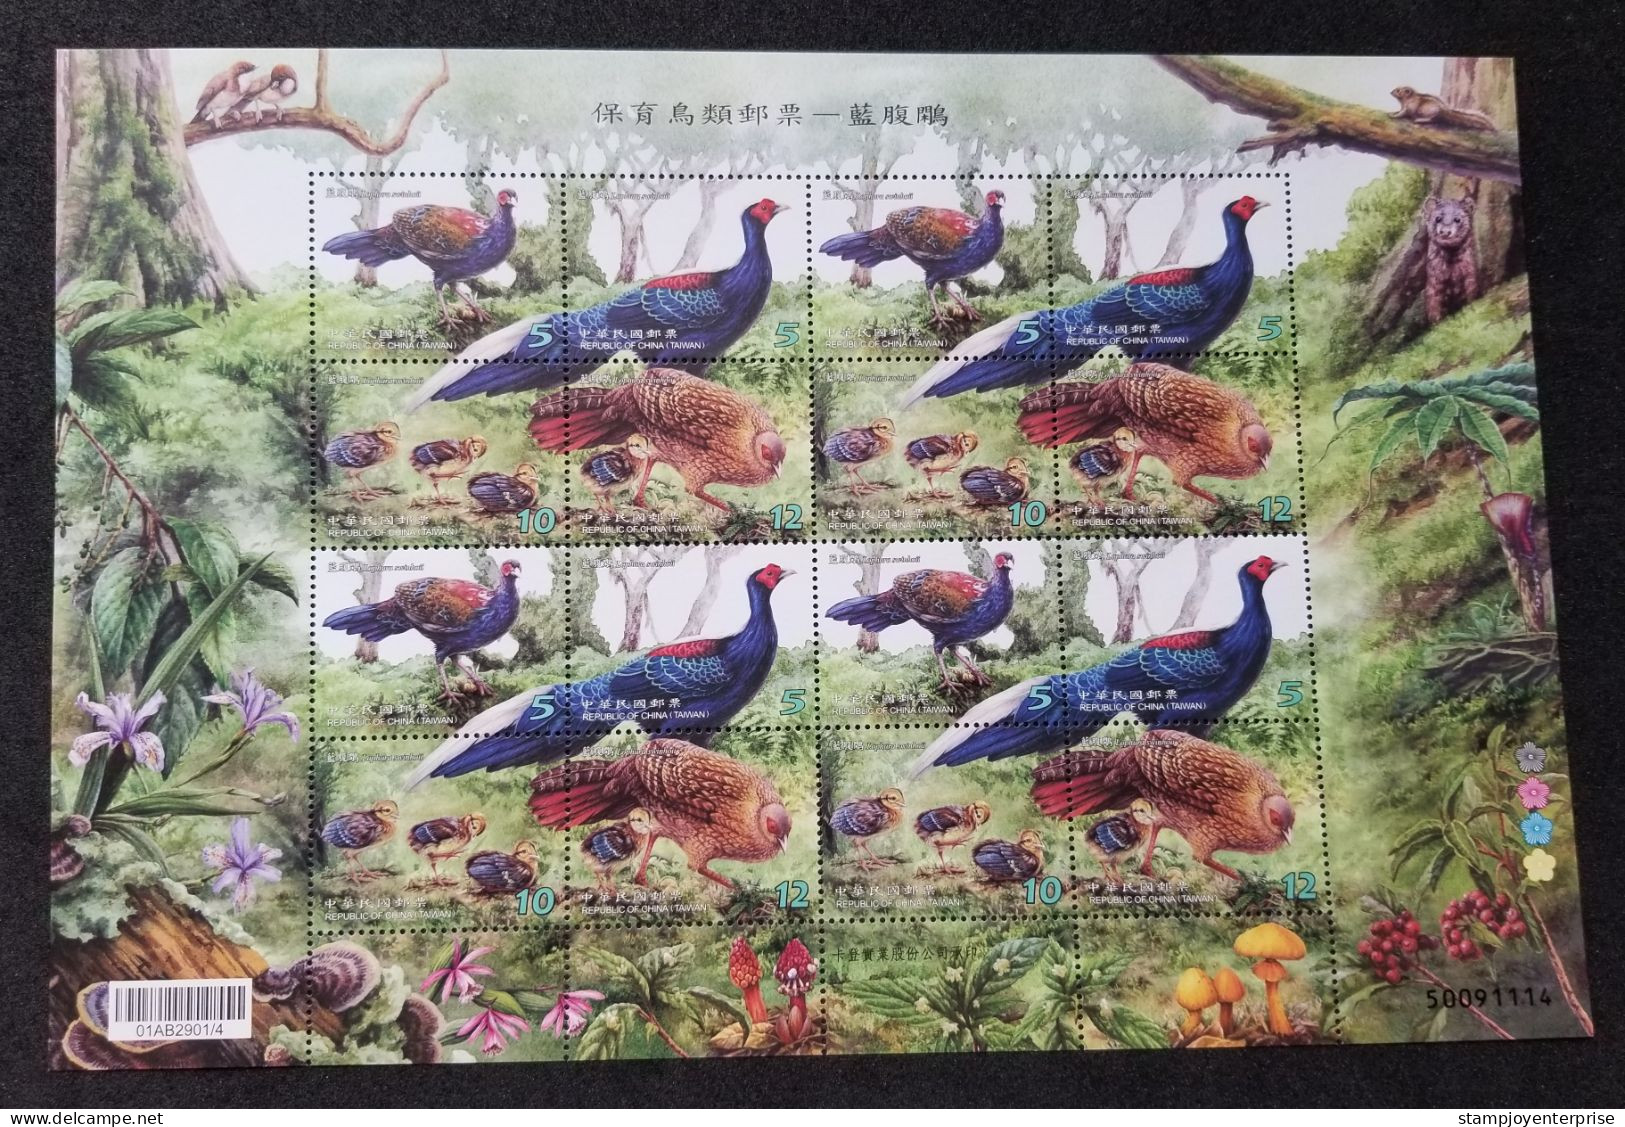 Taiwan Conservation Of Birds - Swinhoe's Pheasant 2014 Fauna Wildlife Bird Squirrel Fern (sheetlet) MNH - Ungebraucht